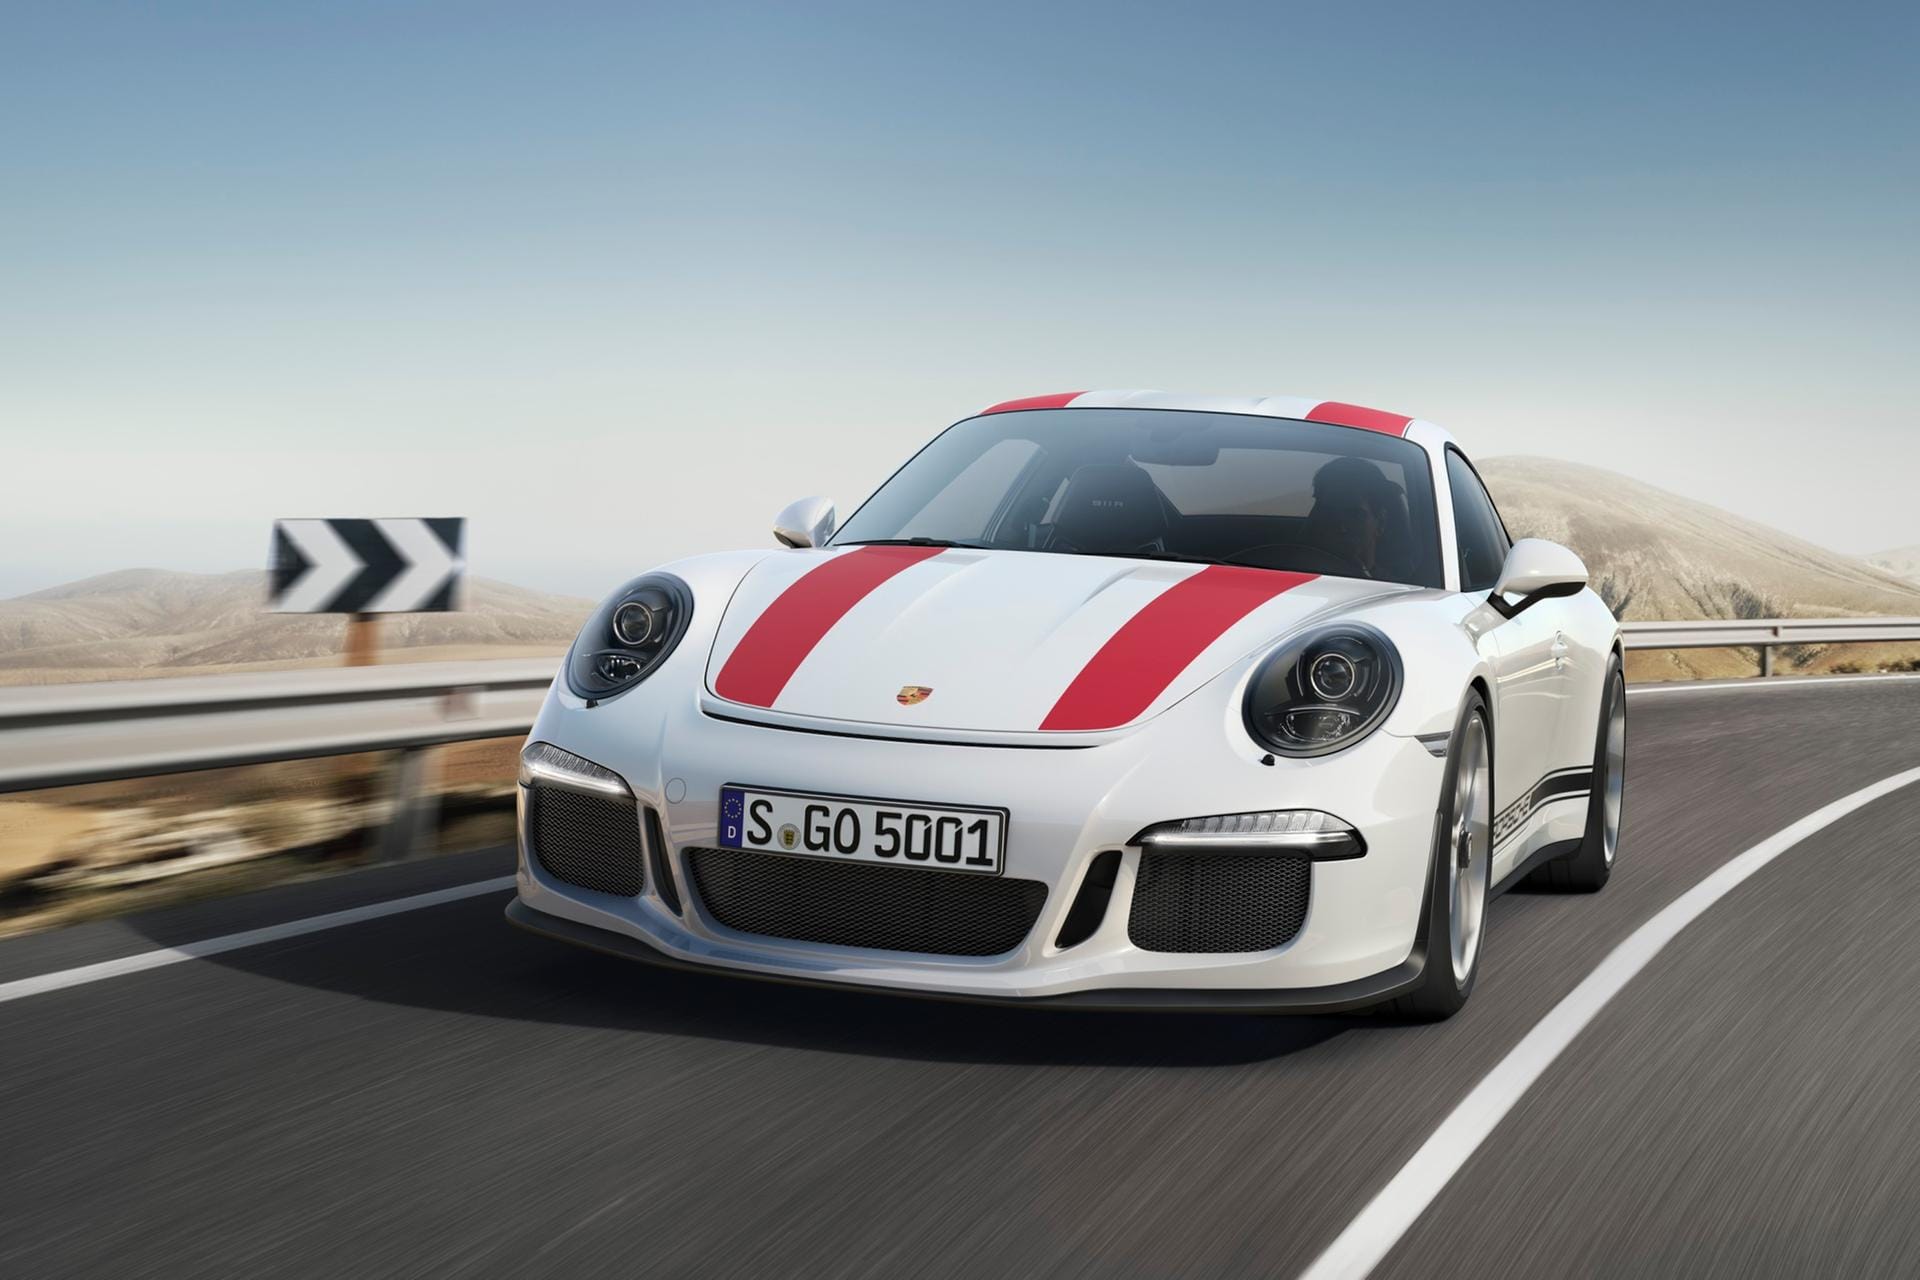 Porsche 911 R: Angetrieben wird der Sportler von einem 500 PS starken Vierliter-Saugmotor. Der Sechszylinder-Boxermotor bringt den 911 R in 3,8 Sekunden auf Tempo 100. Erst bei 323 km/h ist die Höchstgeschwindigkeit erreicht.